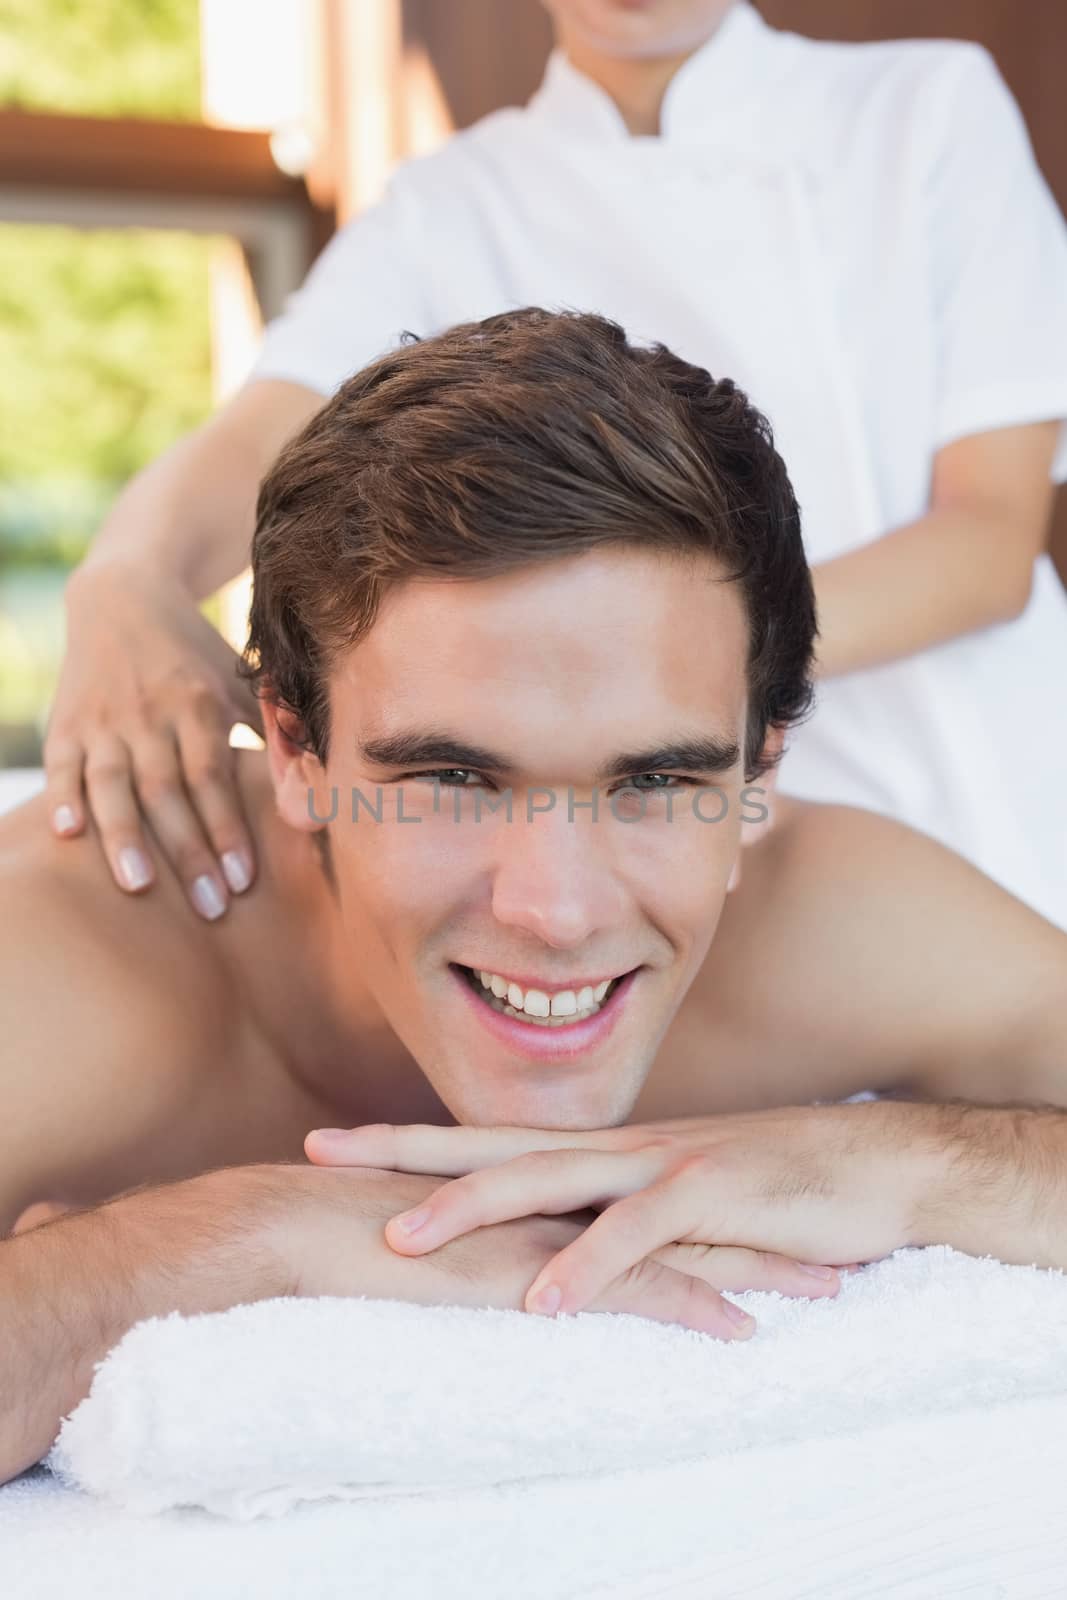 Handsome man receiving shoulder massage at spa center by Wavebreakmedia